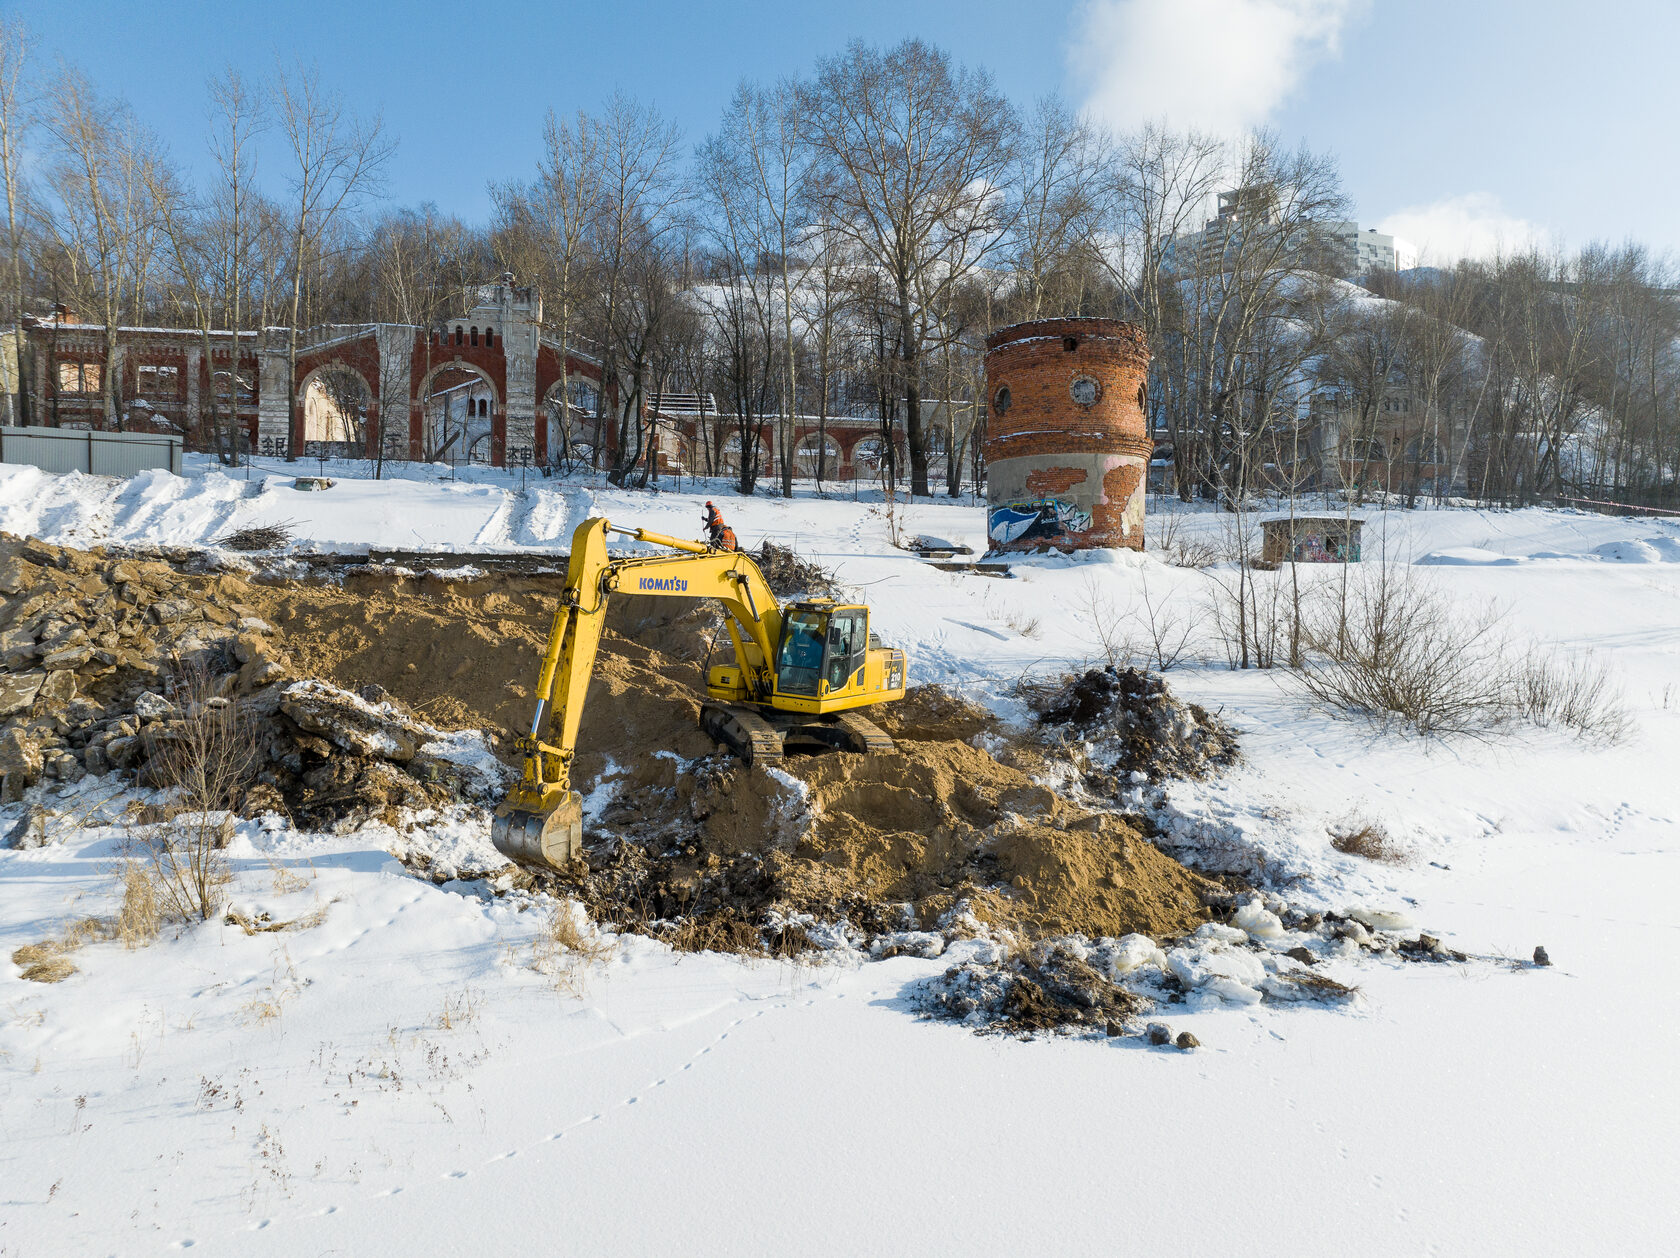 Благовещенская слобода: Нижний Новгород обретает новый речной фасад